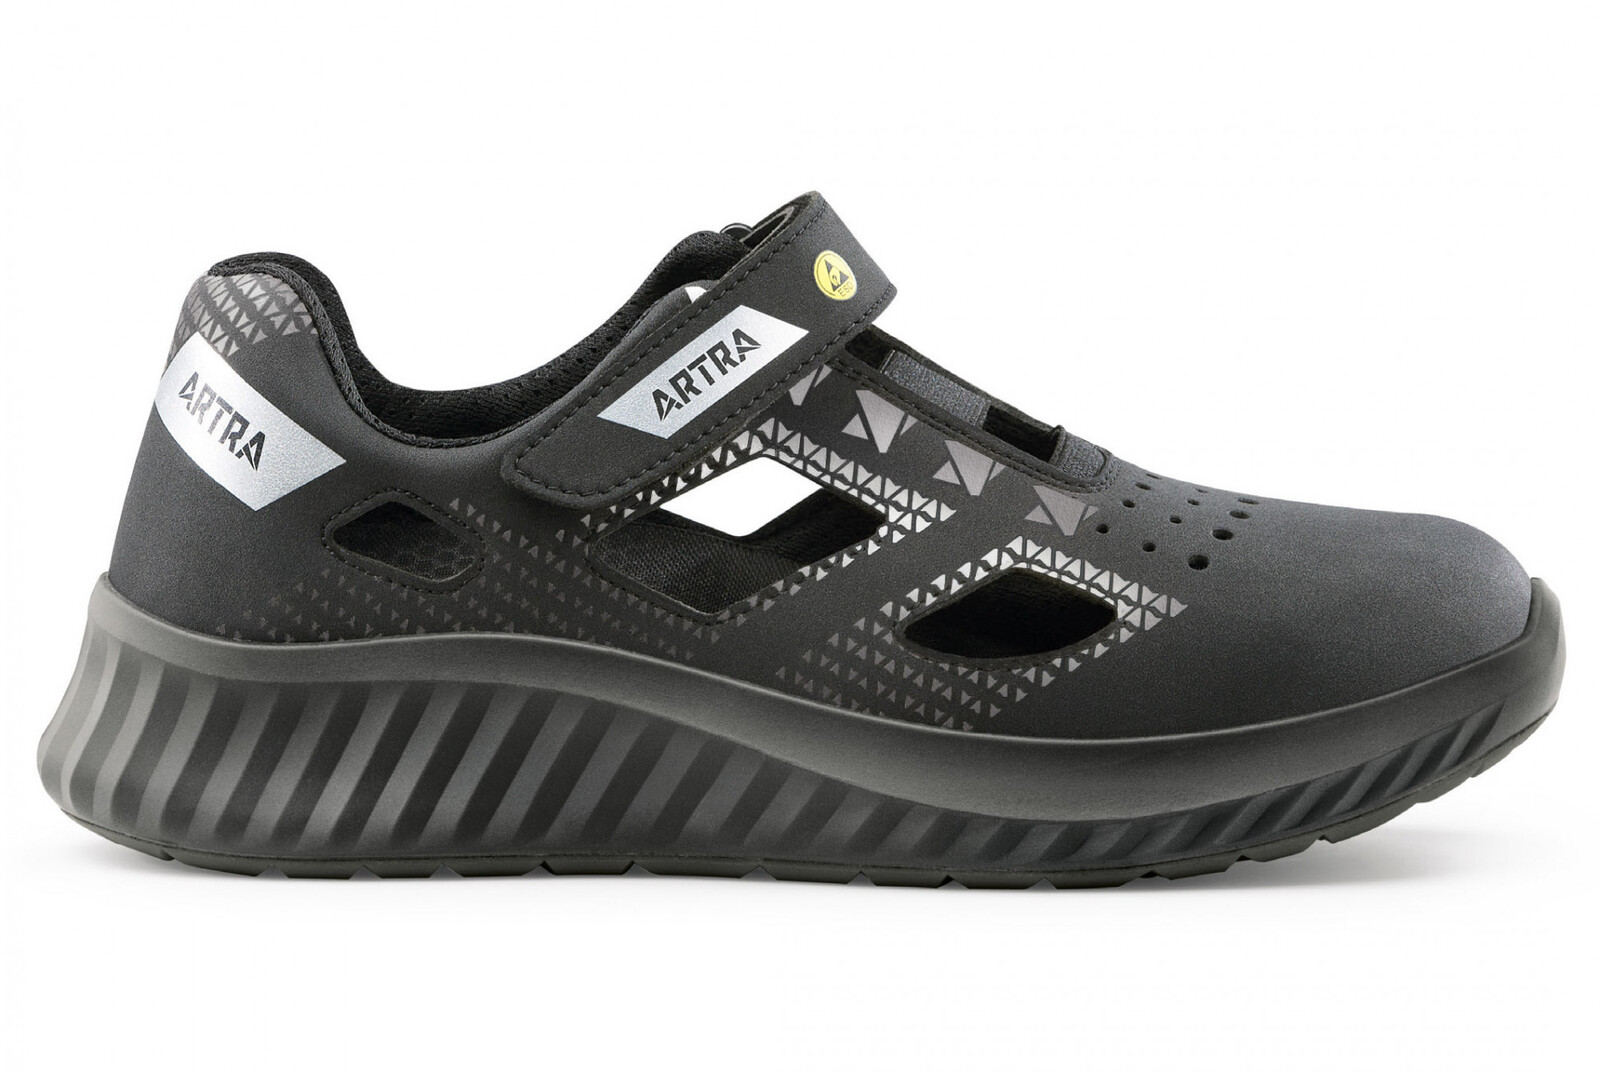 Bezpečnostné sandále Artra Arso 701 616560 S1 SRC ESD - veľkosť: 44, farba: čierna/sivá